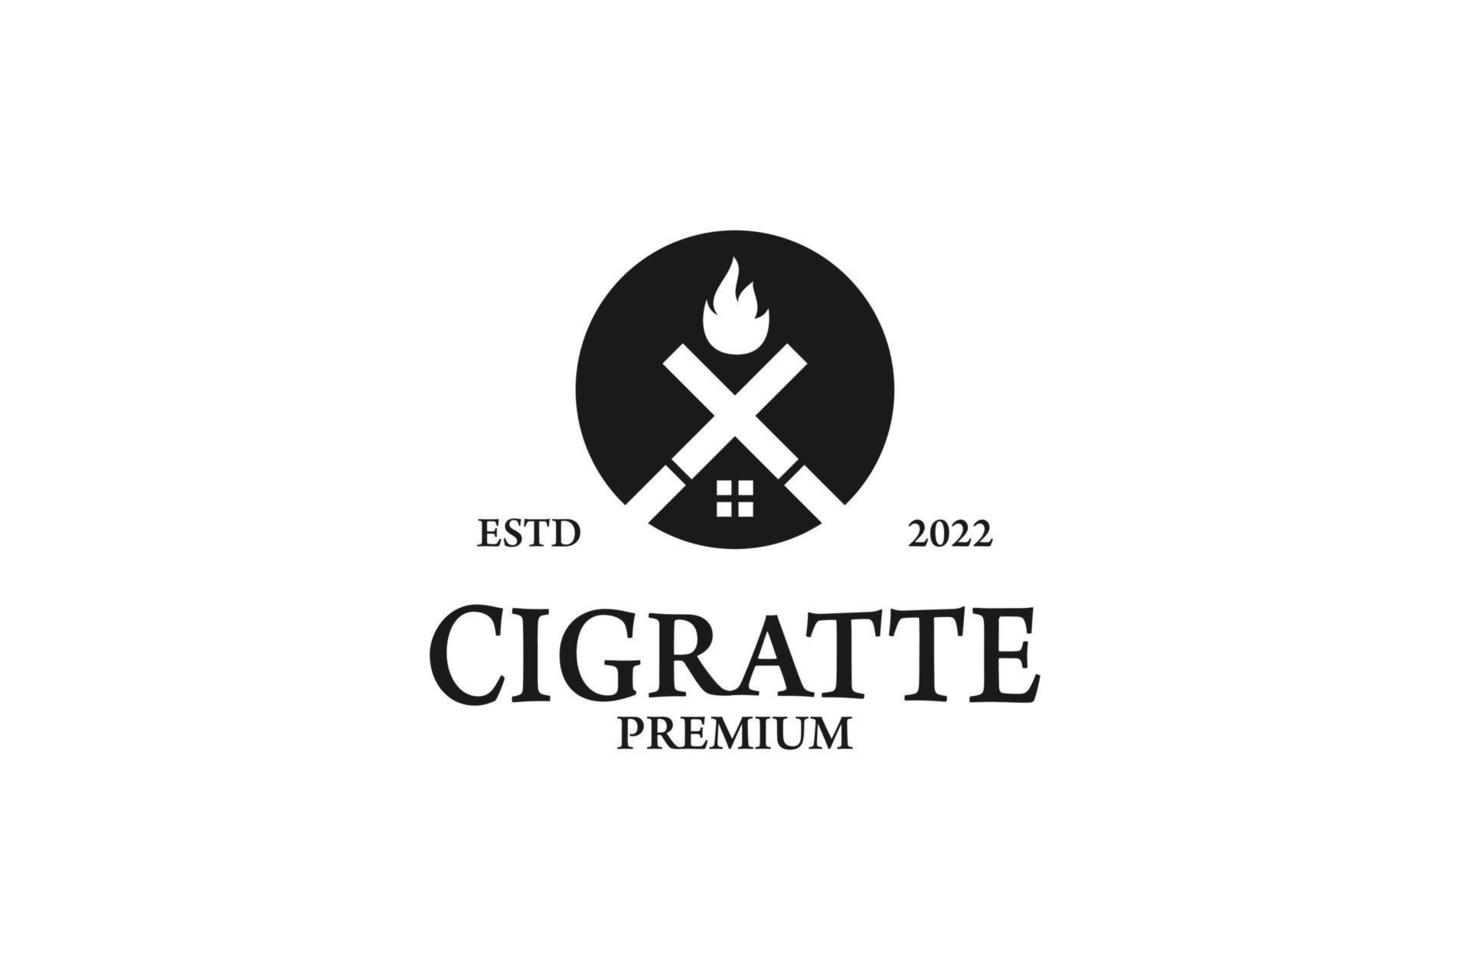 plat cigarette industrie usine logo design vecteur graphique symbole icône illustration idée créative